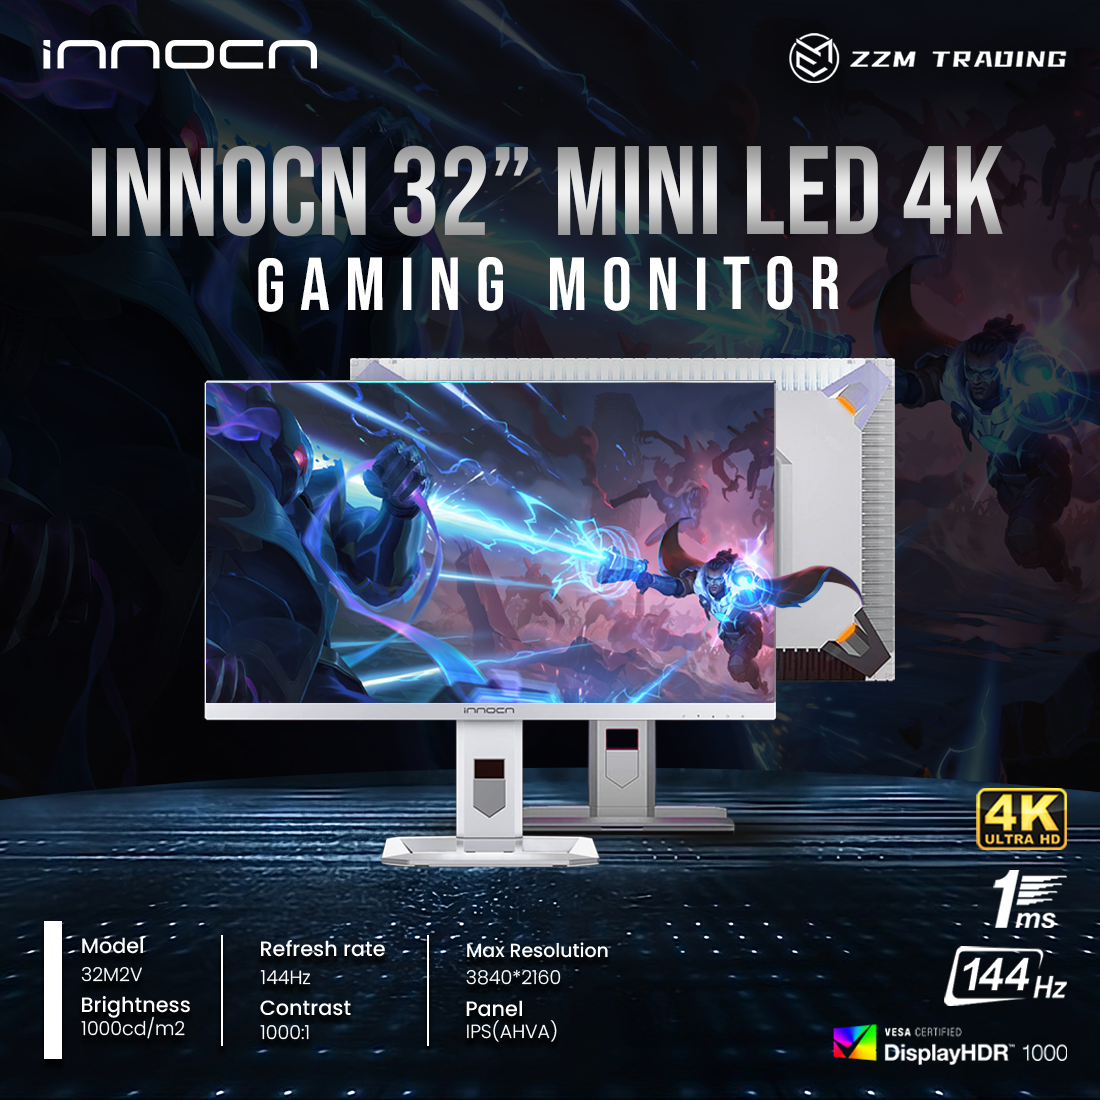 The Best 4K Gaming Monitor Innocn 32M2V